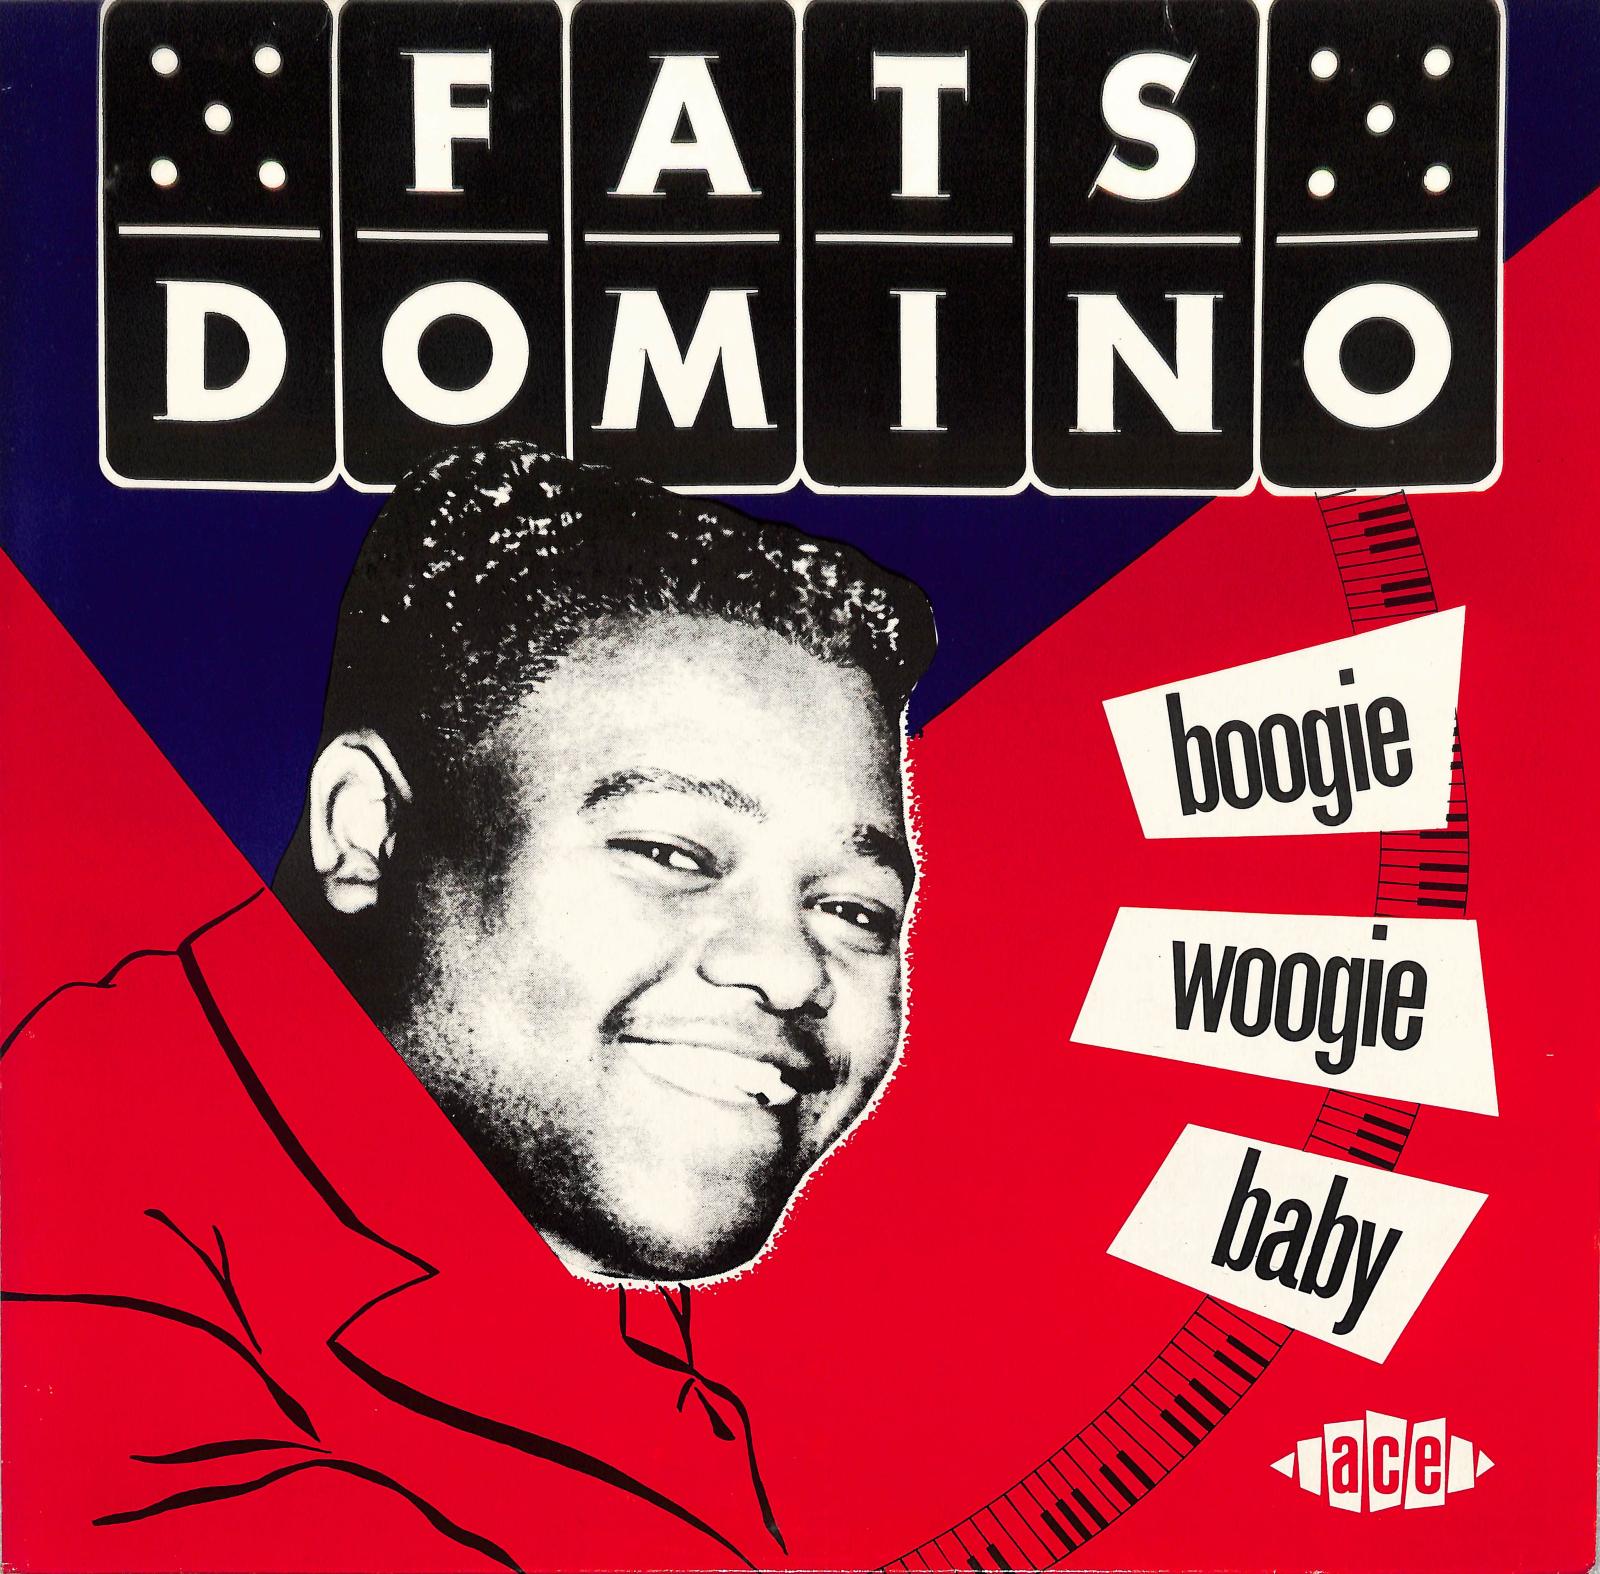 FATS DOMINO - Boogie Woogie Baby